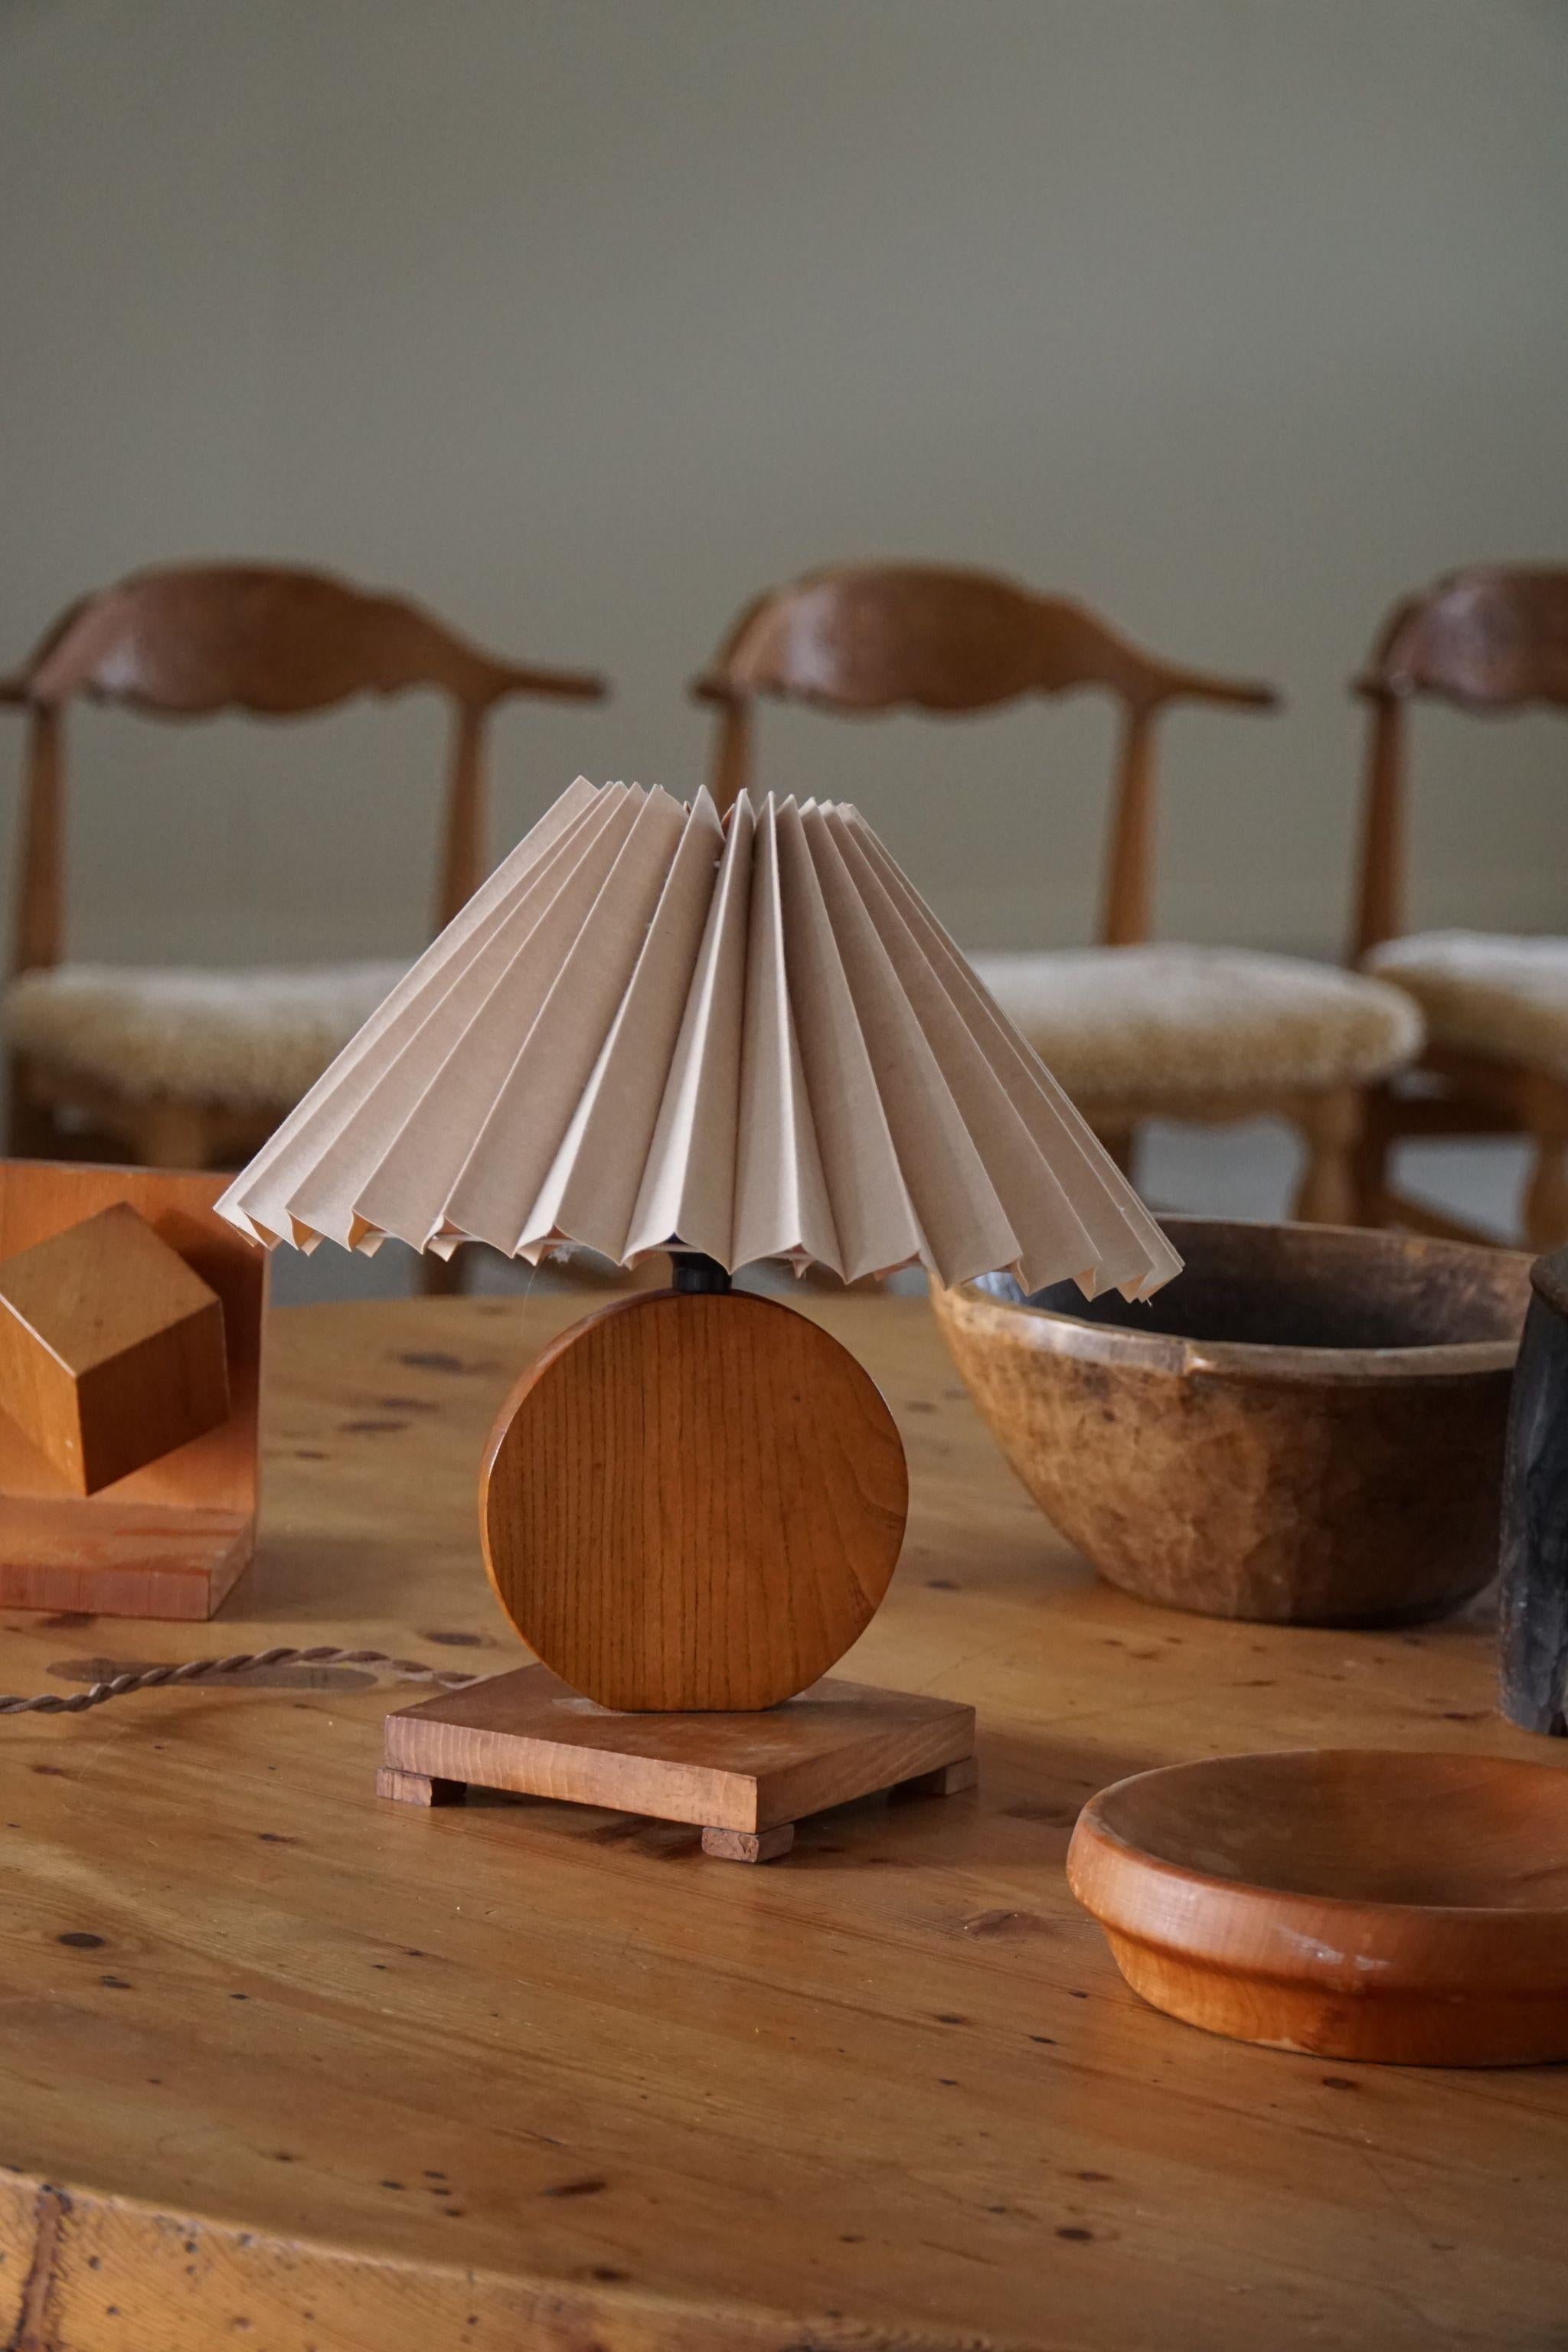 Une lampe de table en bois de chêne du début du 20e siècle. Fabriqué au Danemark. Une belle forme qui complète l'impression générale de cette lampe de table Art déco.

Excellent état vintage. 

